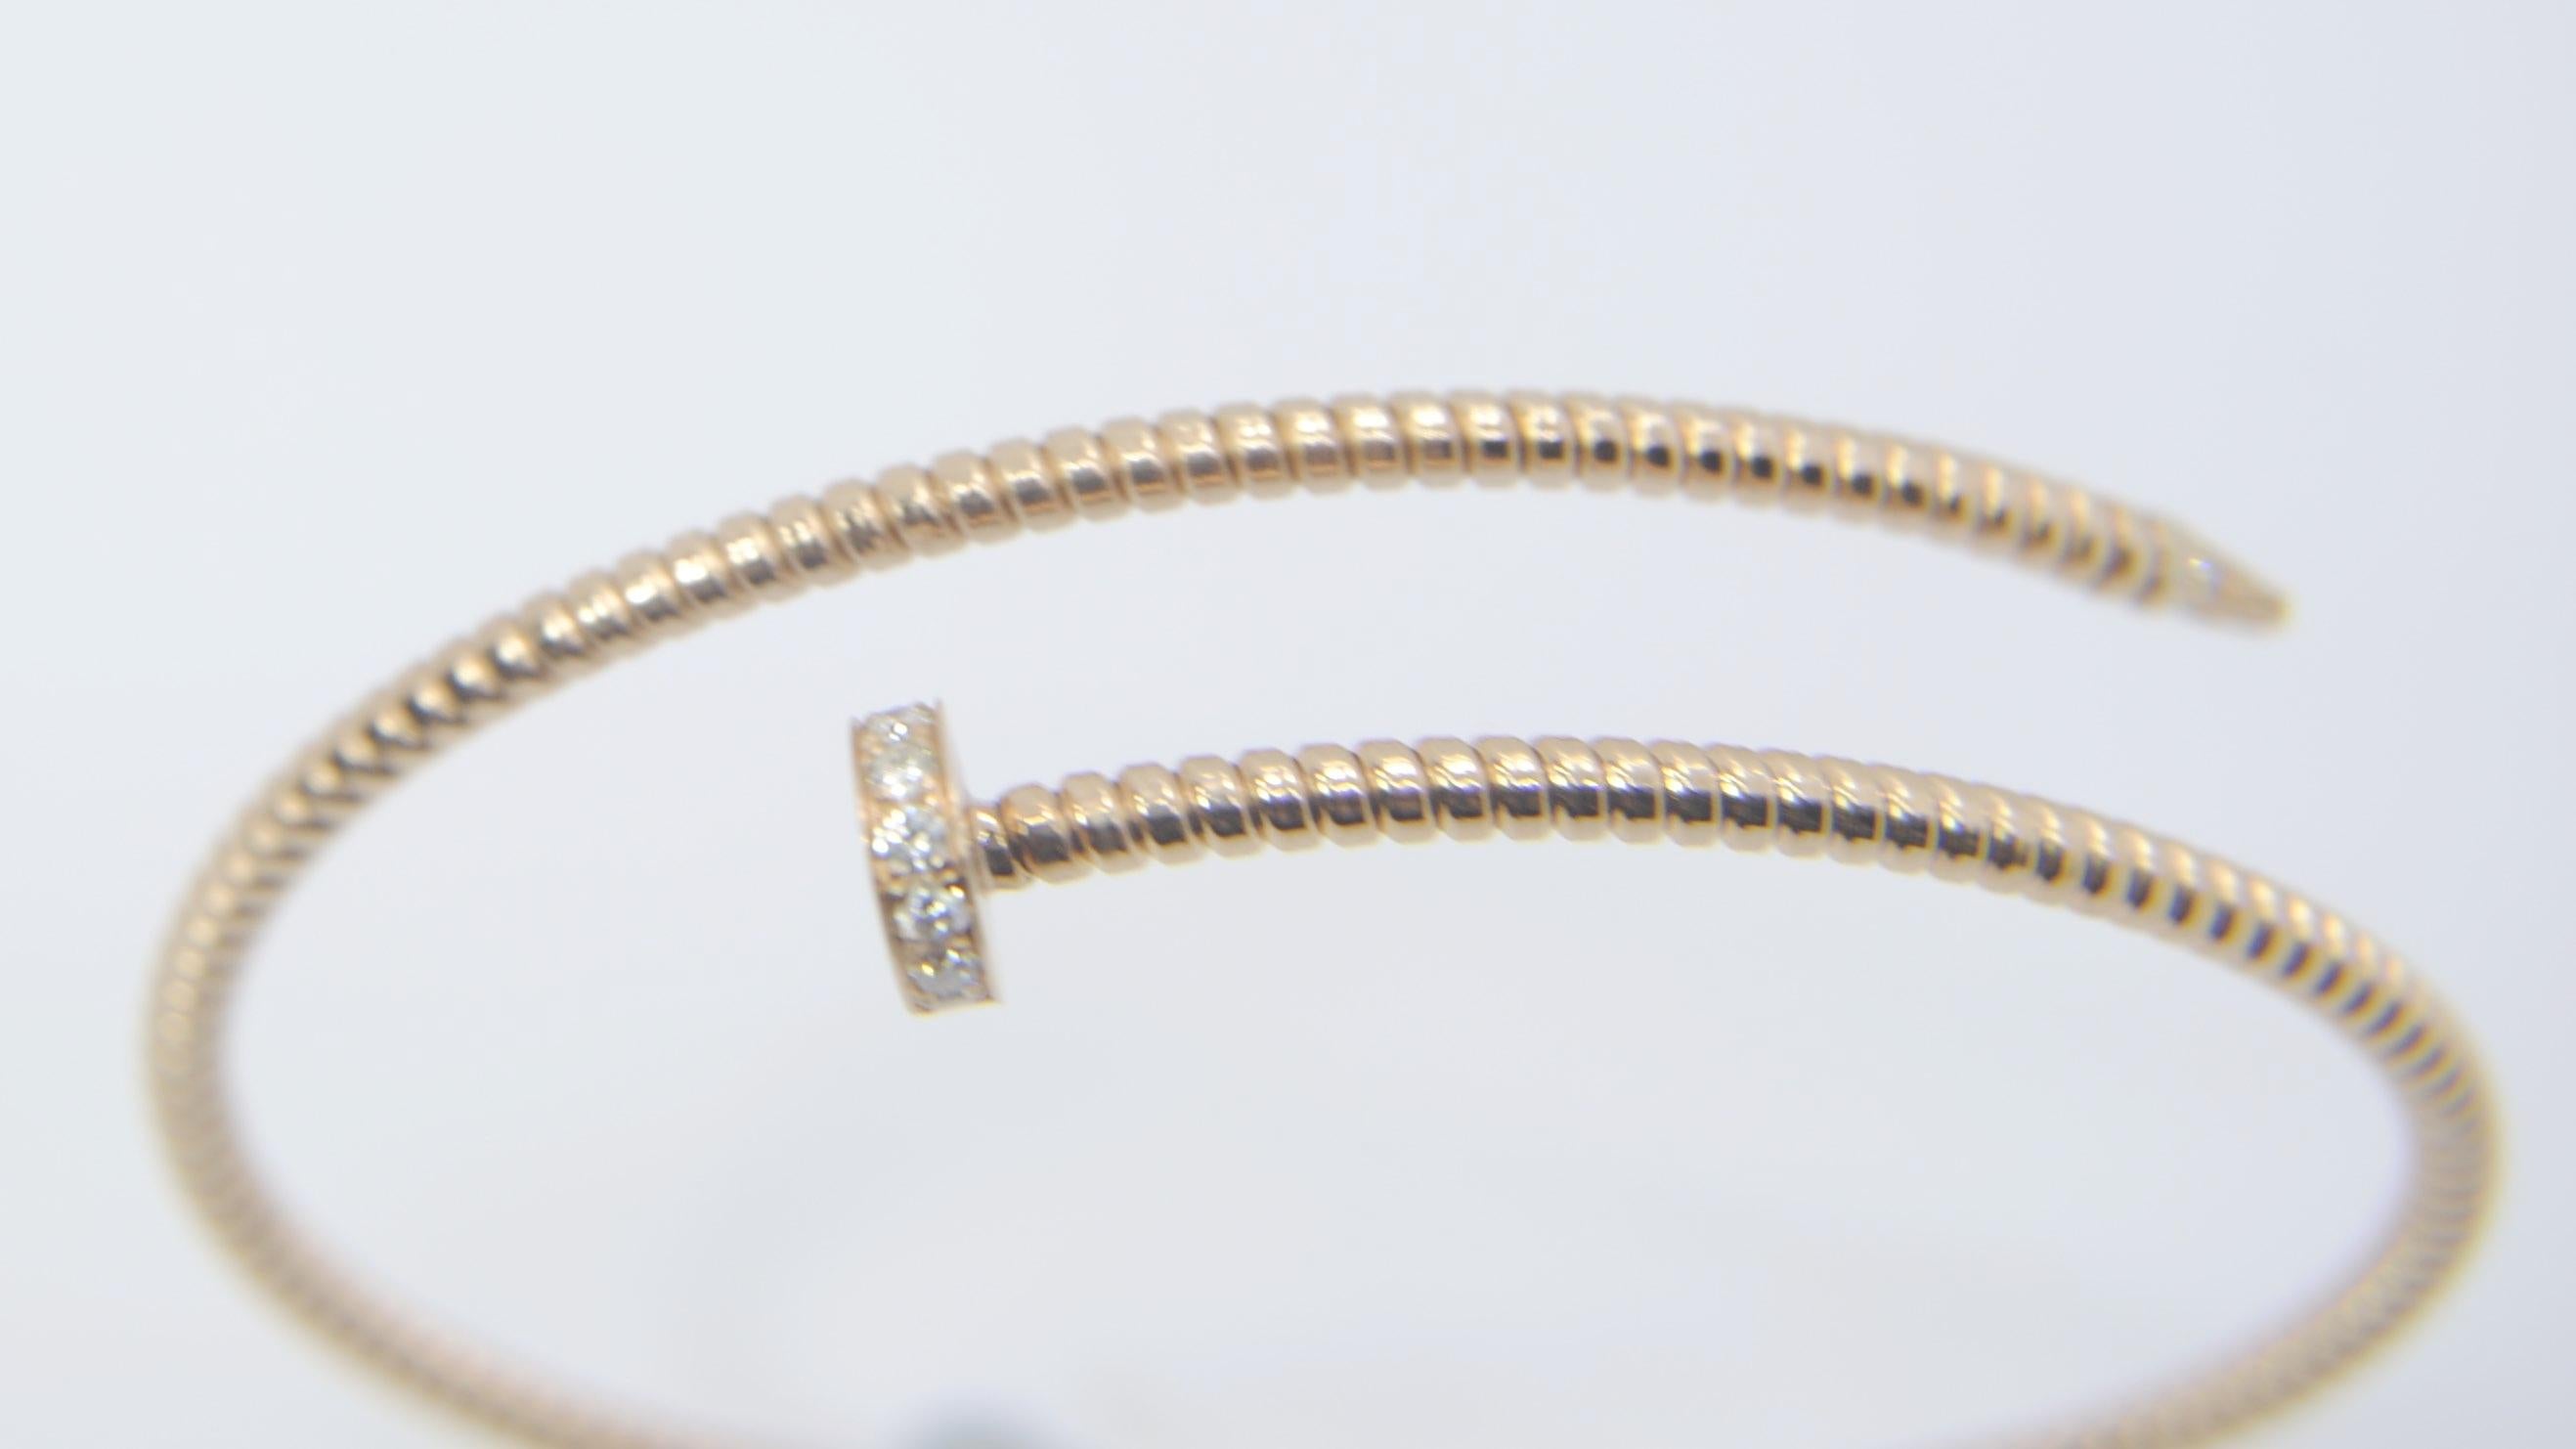 Bracelet en or jaune 18 carats et diamants Antora Tubogas

Bracelet flexible et adaptable avec une fabrication artisanale en tubogas qui convient aux poignets de 7,87 pouces de taille moyenne à grande
Disponible en trois couleurs d'or, jaune, blanc